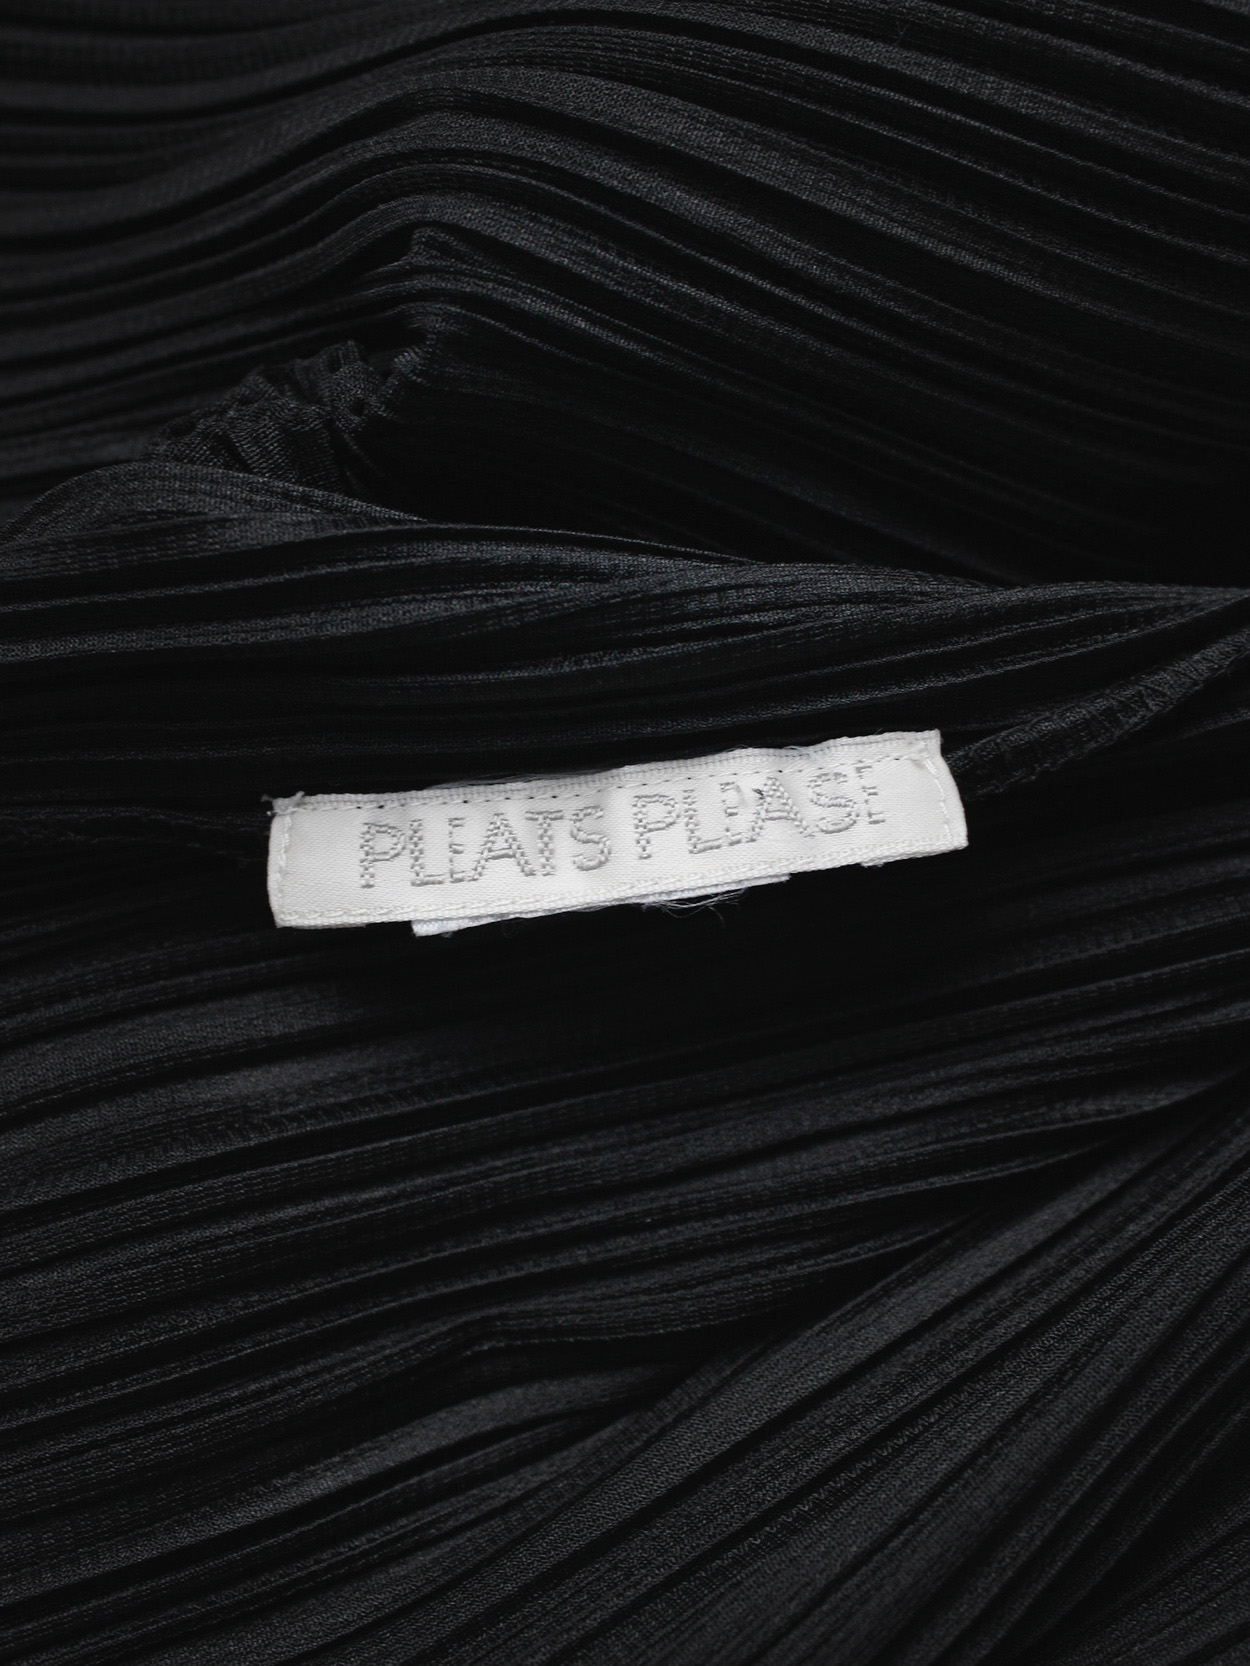 vaniitas vintage Issey Miyake Pleats Please black cardigan with squared shoulders3711